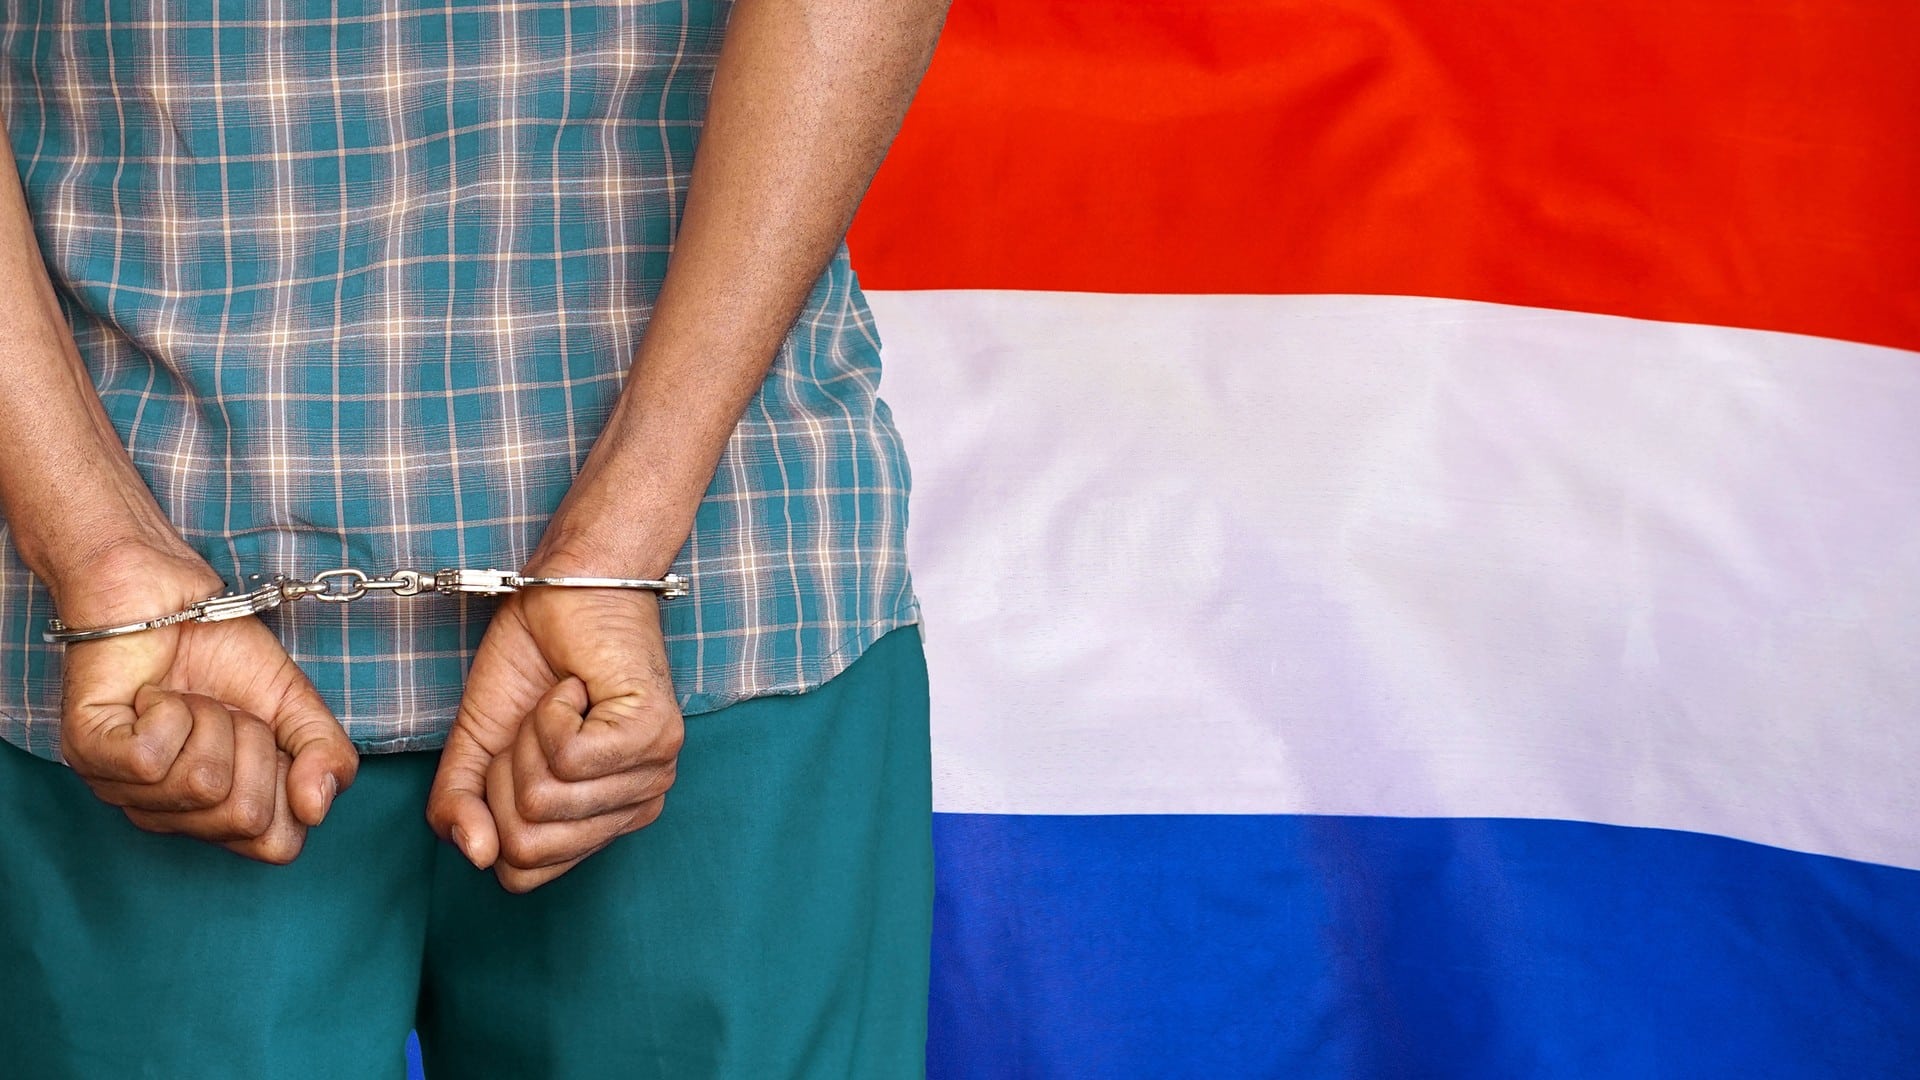 Desenvolvedor do Tornado Cash é preso na Holanda